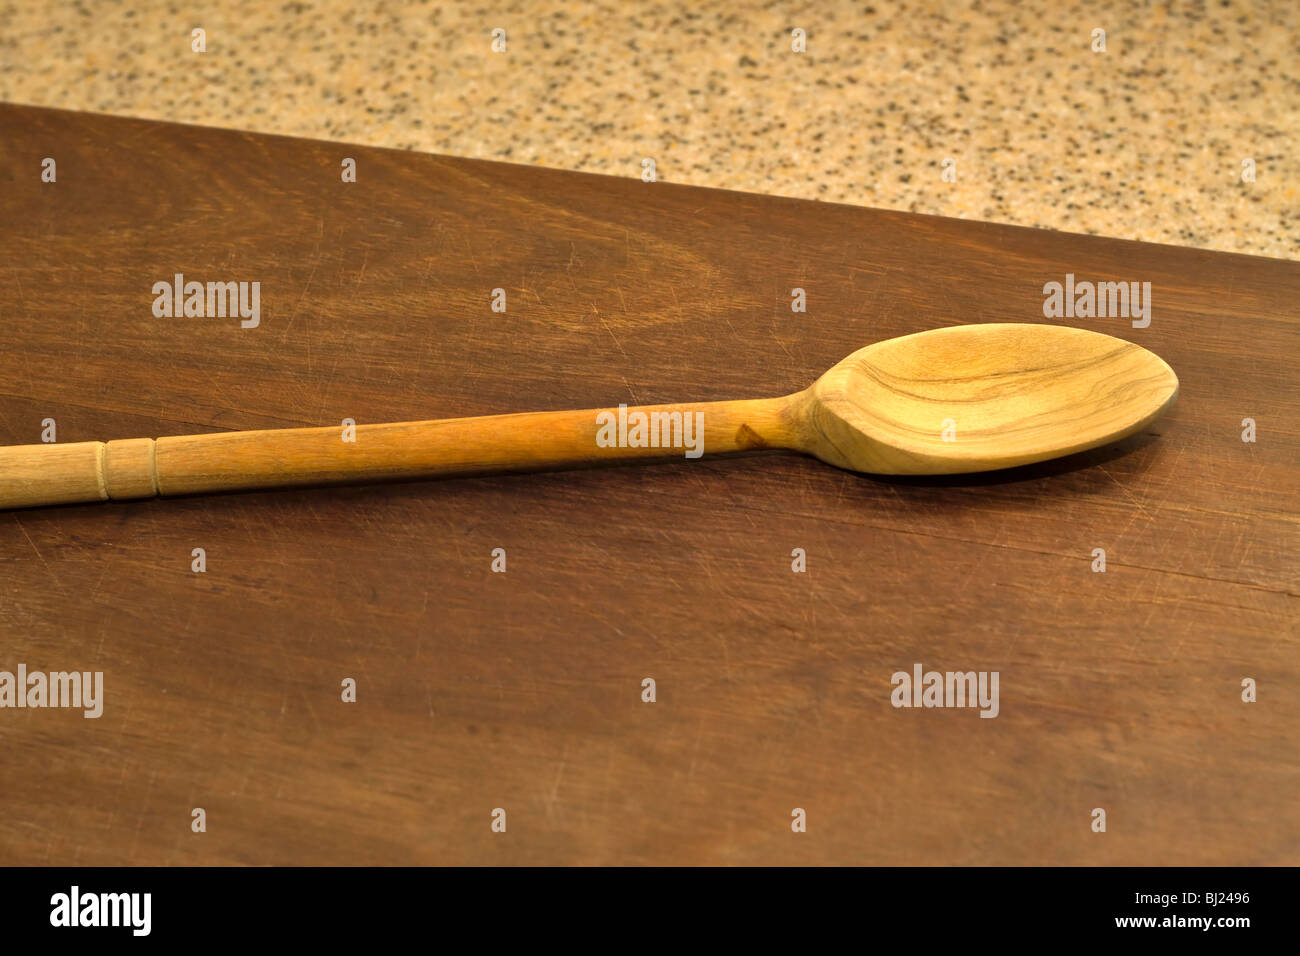 Cucchiaio di legno realizzata in legno d'ulivo Foto Stock